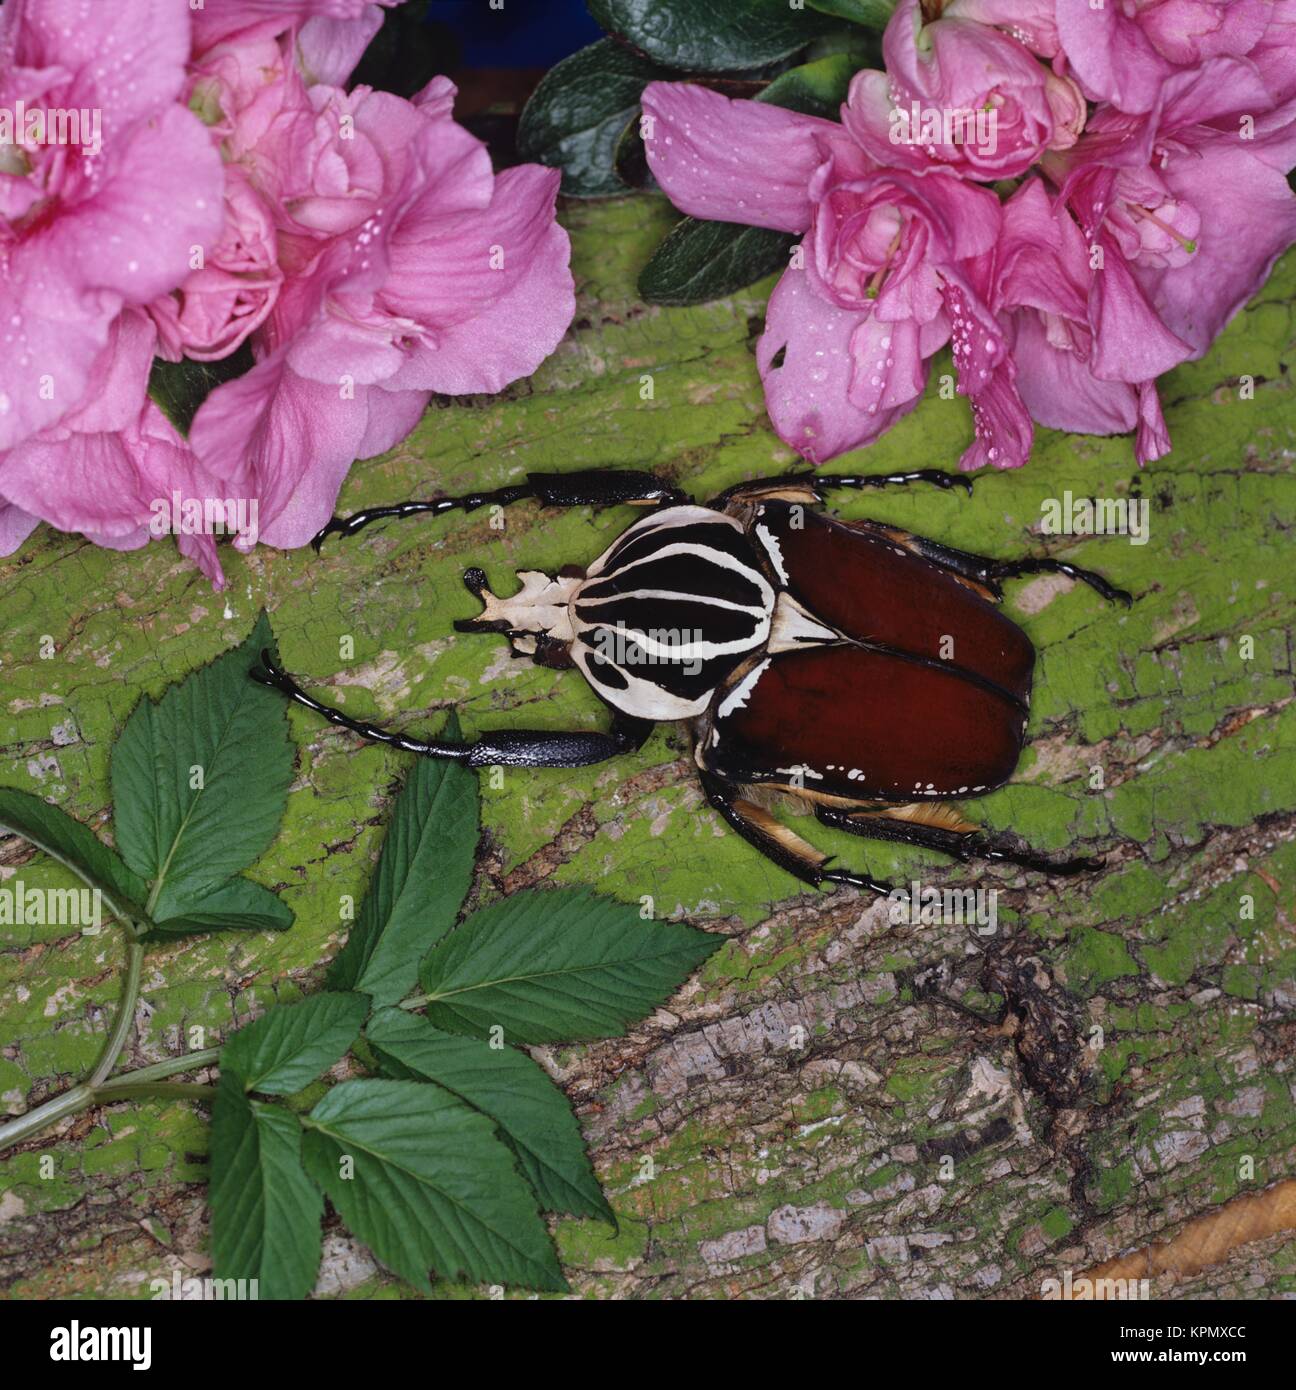 Tropischer männlicher Goliathkäfer auf rosa Blüte. Die Käfer sind  in Westafrika und Zentralafrika beheimatet, wo sie Regenwälder und Baumsavannen bewohnen. Sie sind nachtaktiv. Körpergröße bis 10 cm Länge.                                                                                                                                                                                                                                                                                                                                                                                                           Stock Photo